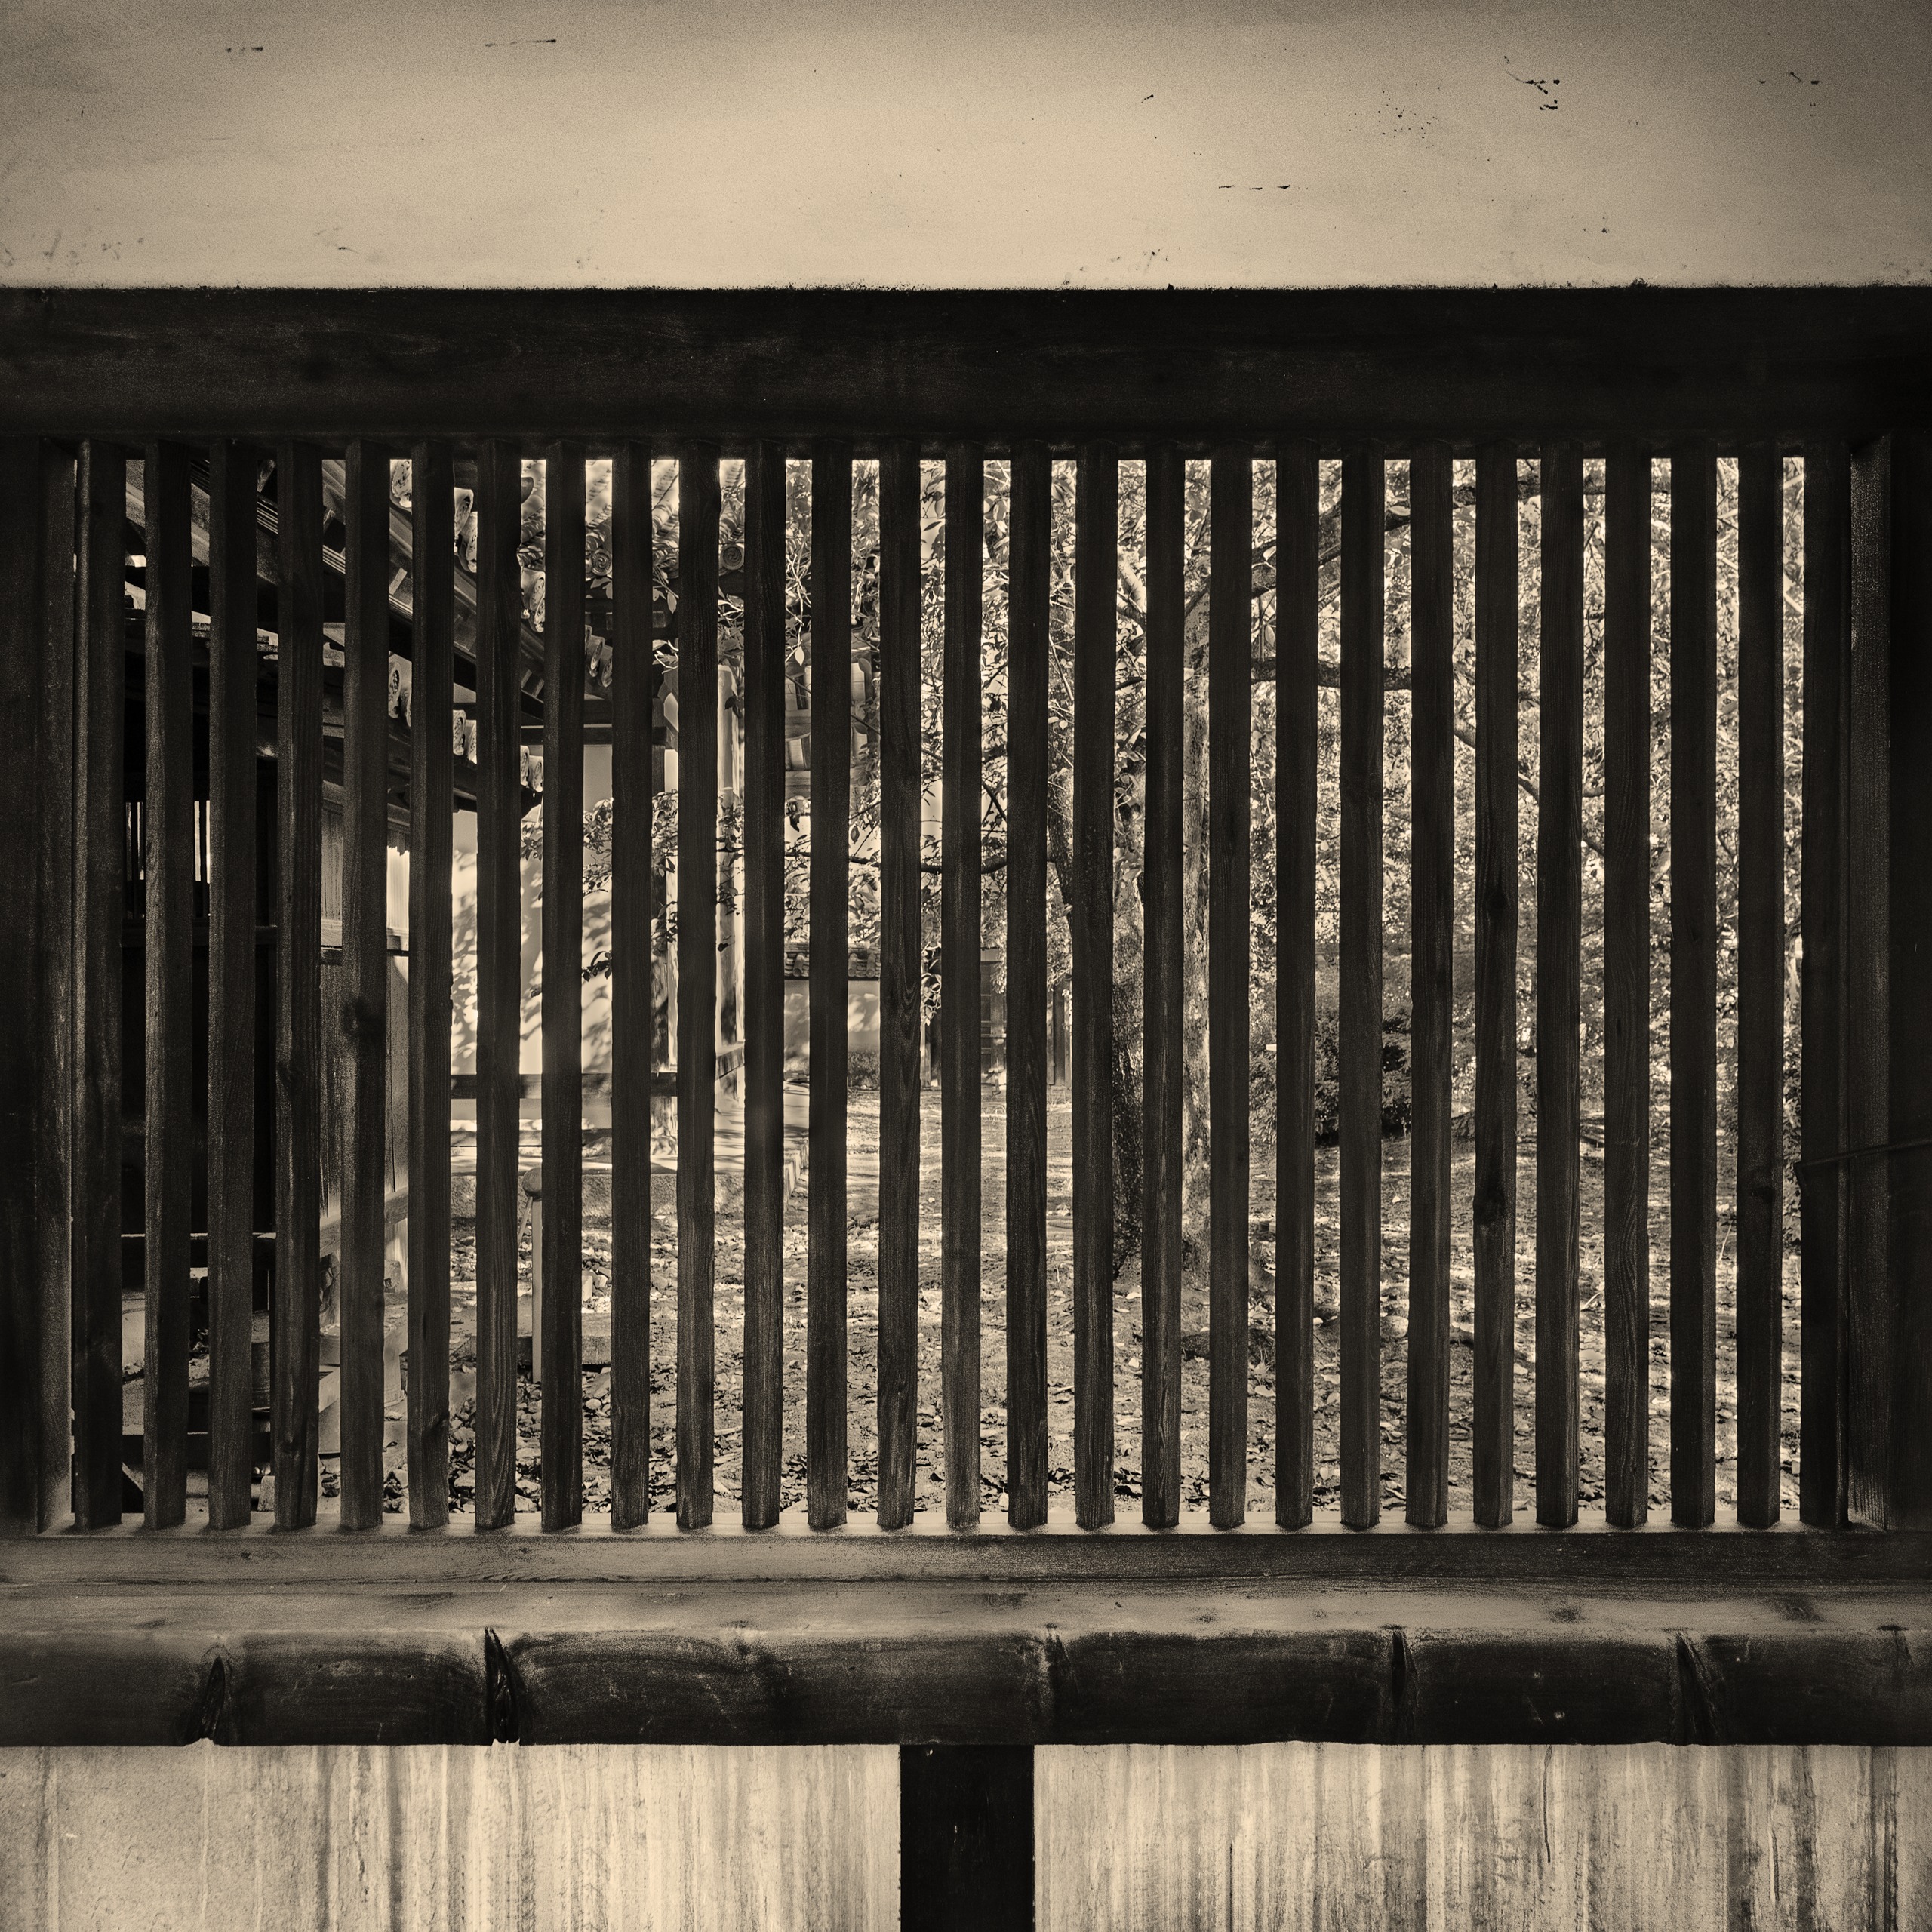 法隆寺回廊のレトロなアルビューメンプリントのモノクロ写真, Horyuji, albumen print, Kairou, monochrome, デジタルネガ